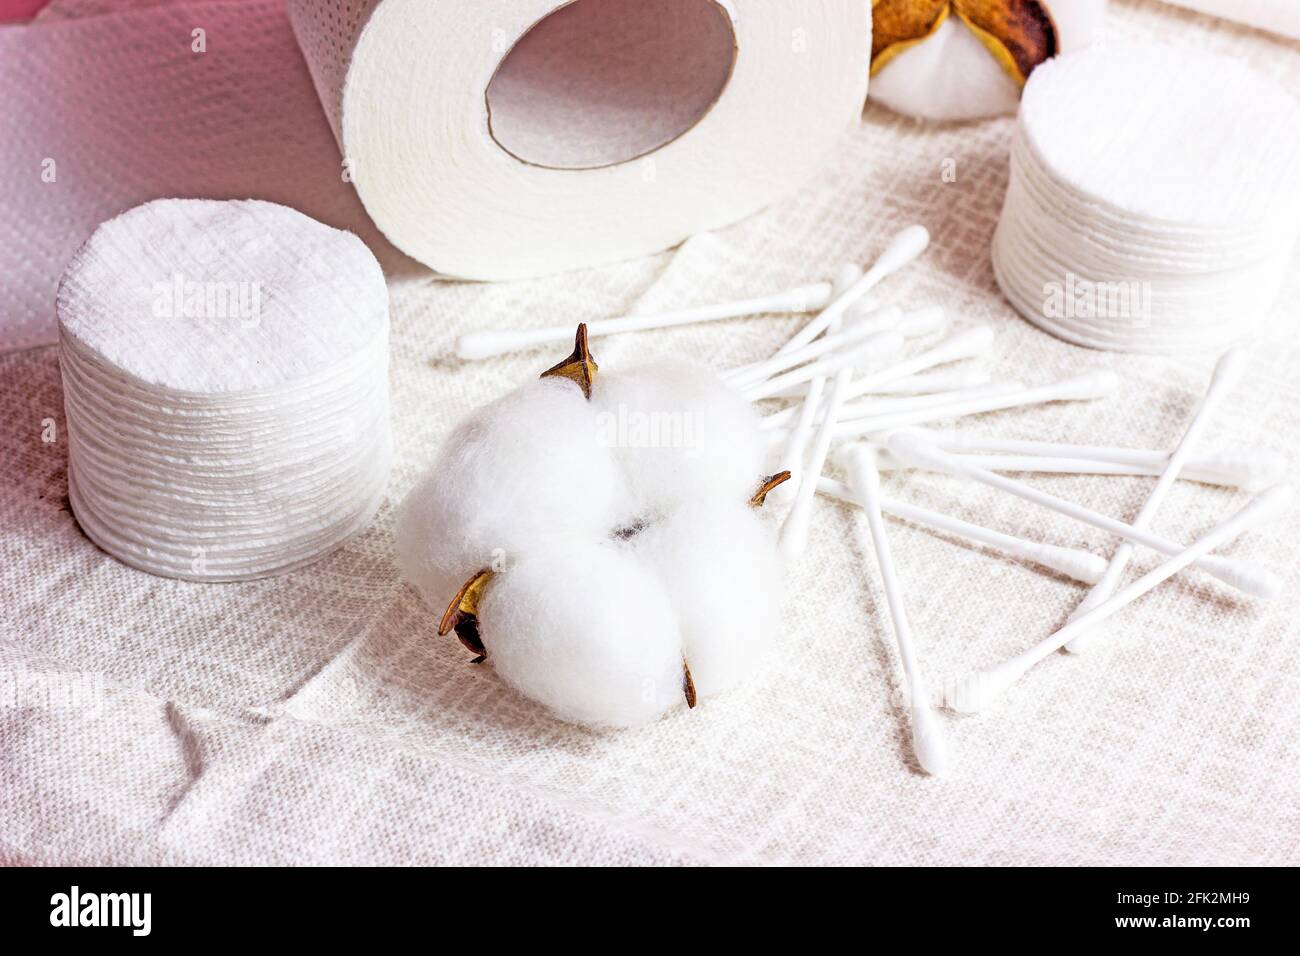 Weiße weiche Wattepads und -Sticks für Hygiene und Gesundheit auf hellem Textilhintergrund. Stockfoto